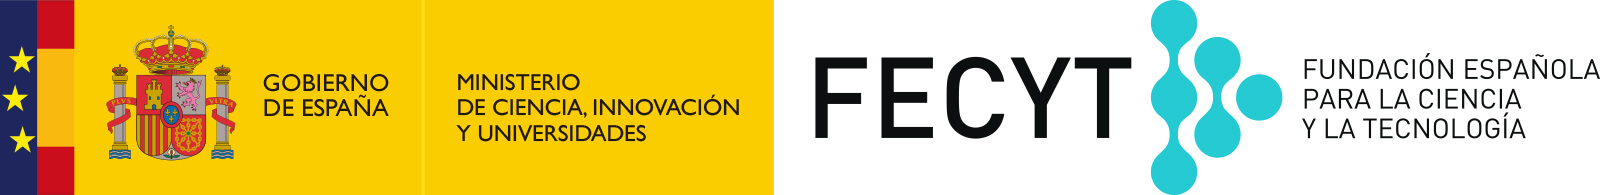 Logotipo Fundación Española de la Ciencia y la Tecnología del Ministerio de Ciencia, Innovación y Universidades